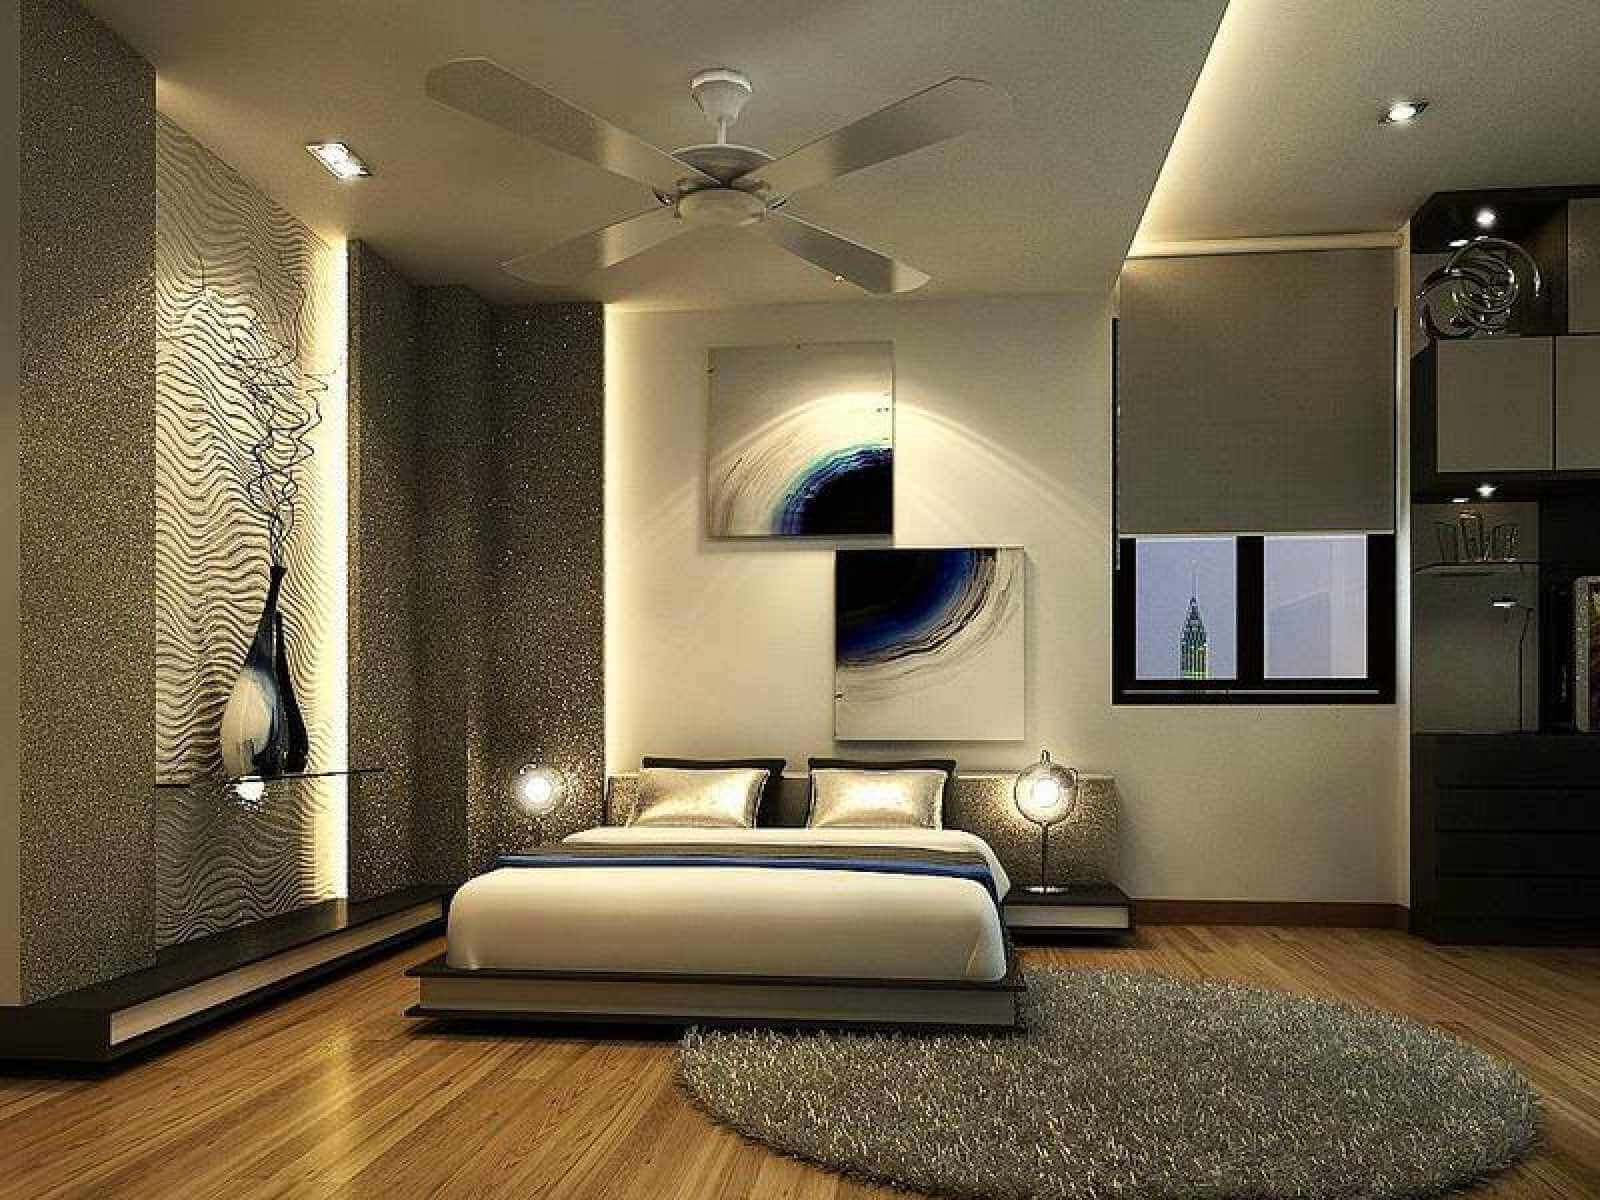 13.ceiling Design For Bedroom 